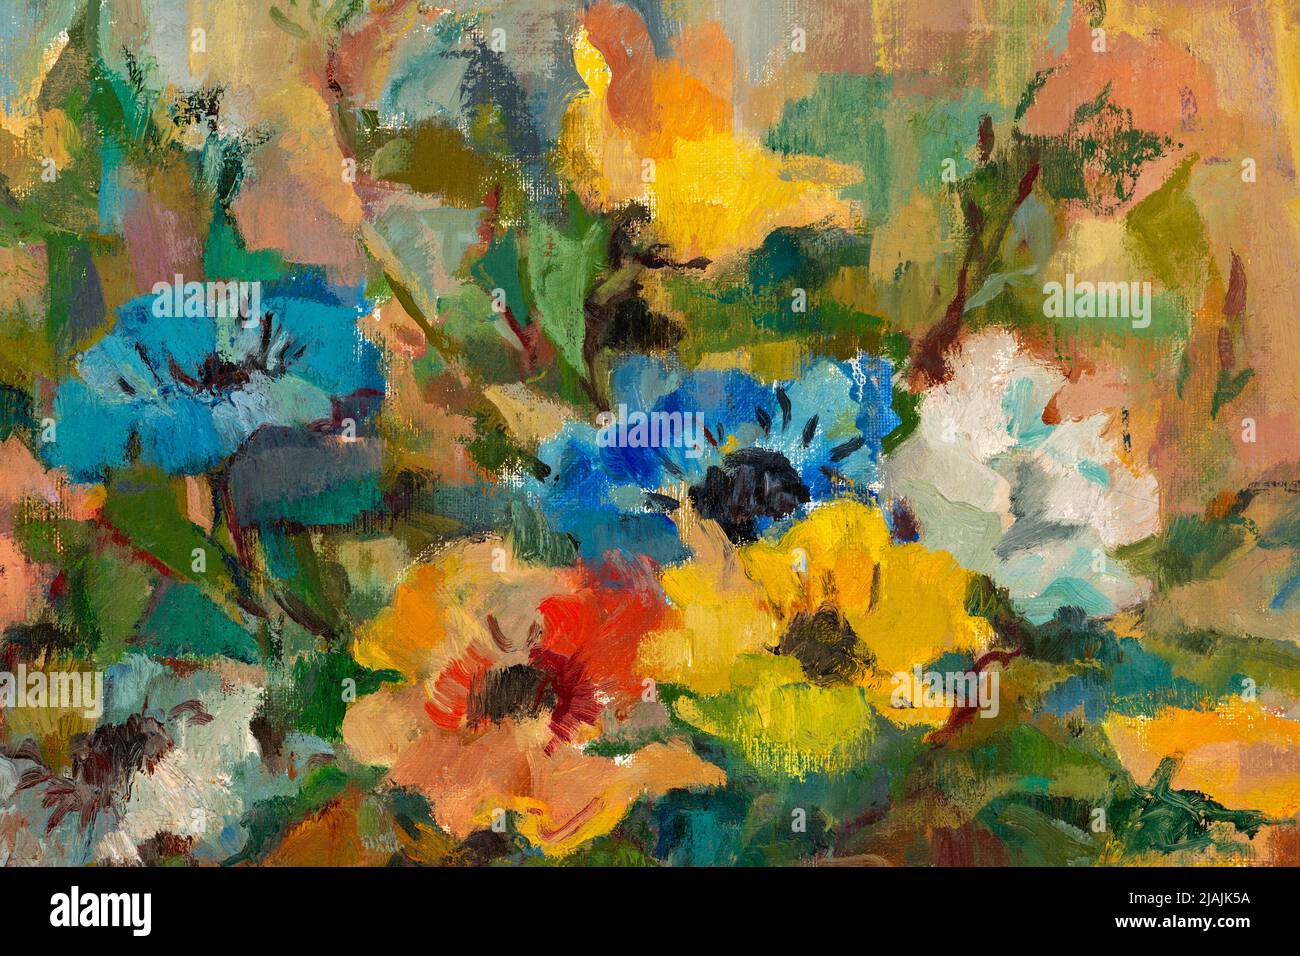 Gros plan d'une peinture à l'huile de style impressionniste représentant un bouquet de fleurs pastel. Banque D'Images